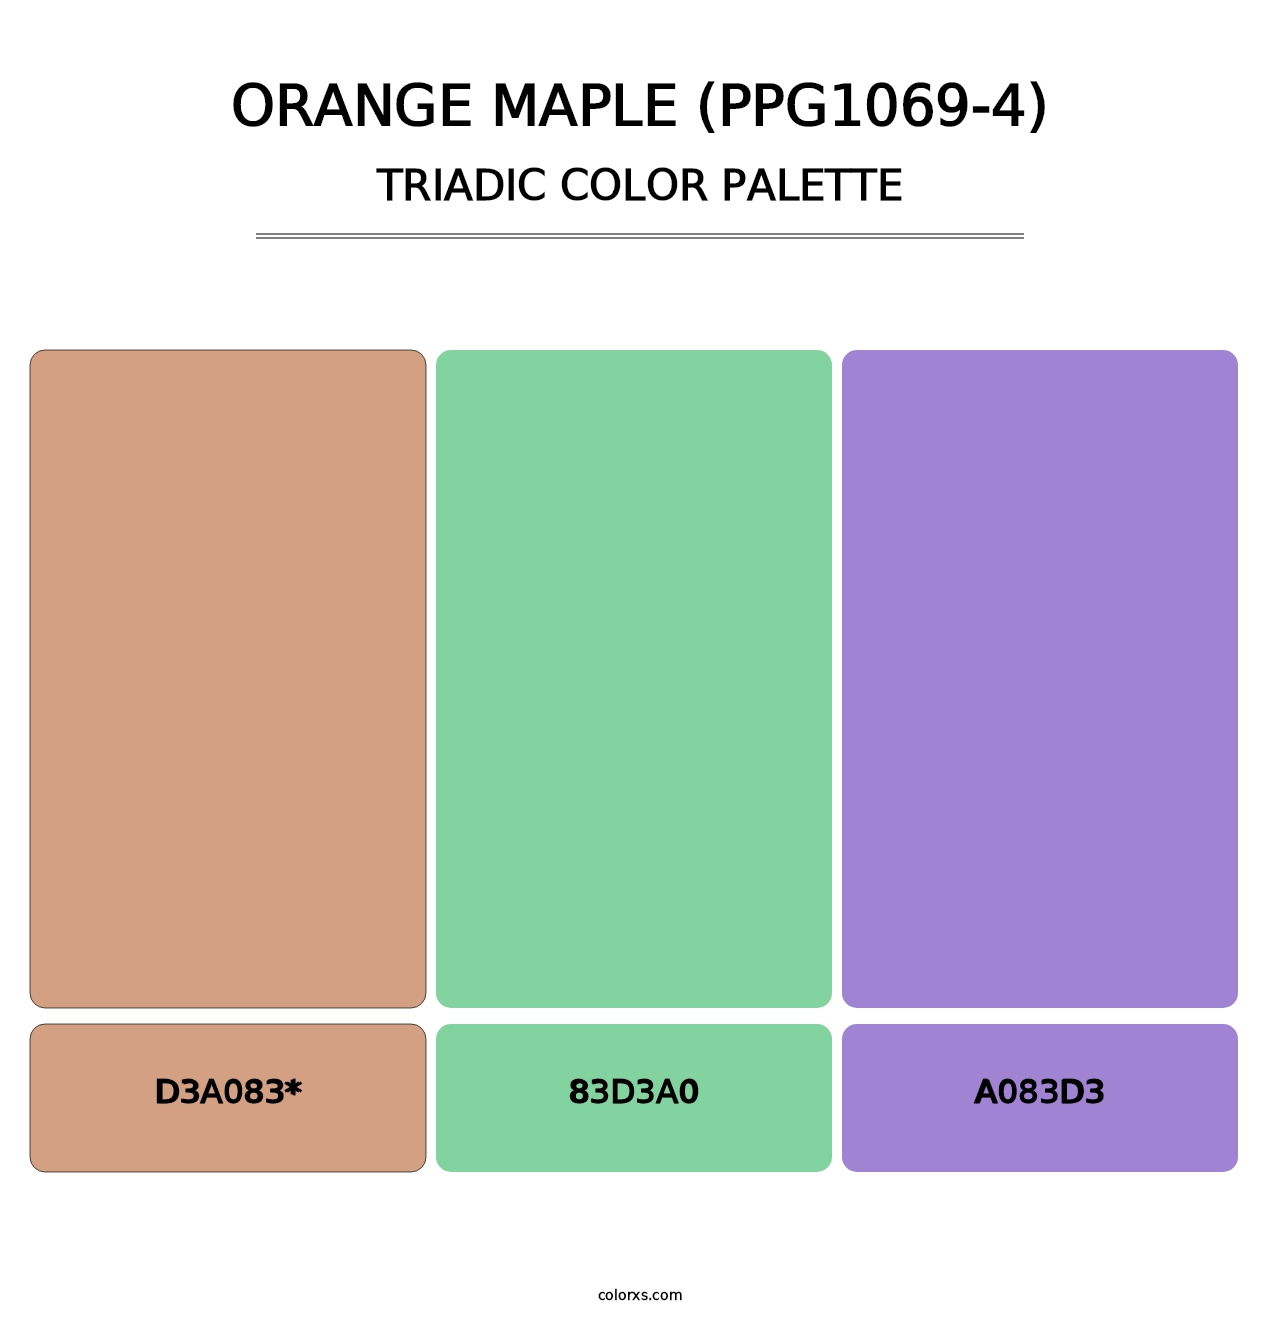 Orange Maple (PPG1069-4) - Triadic Color Palette